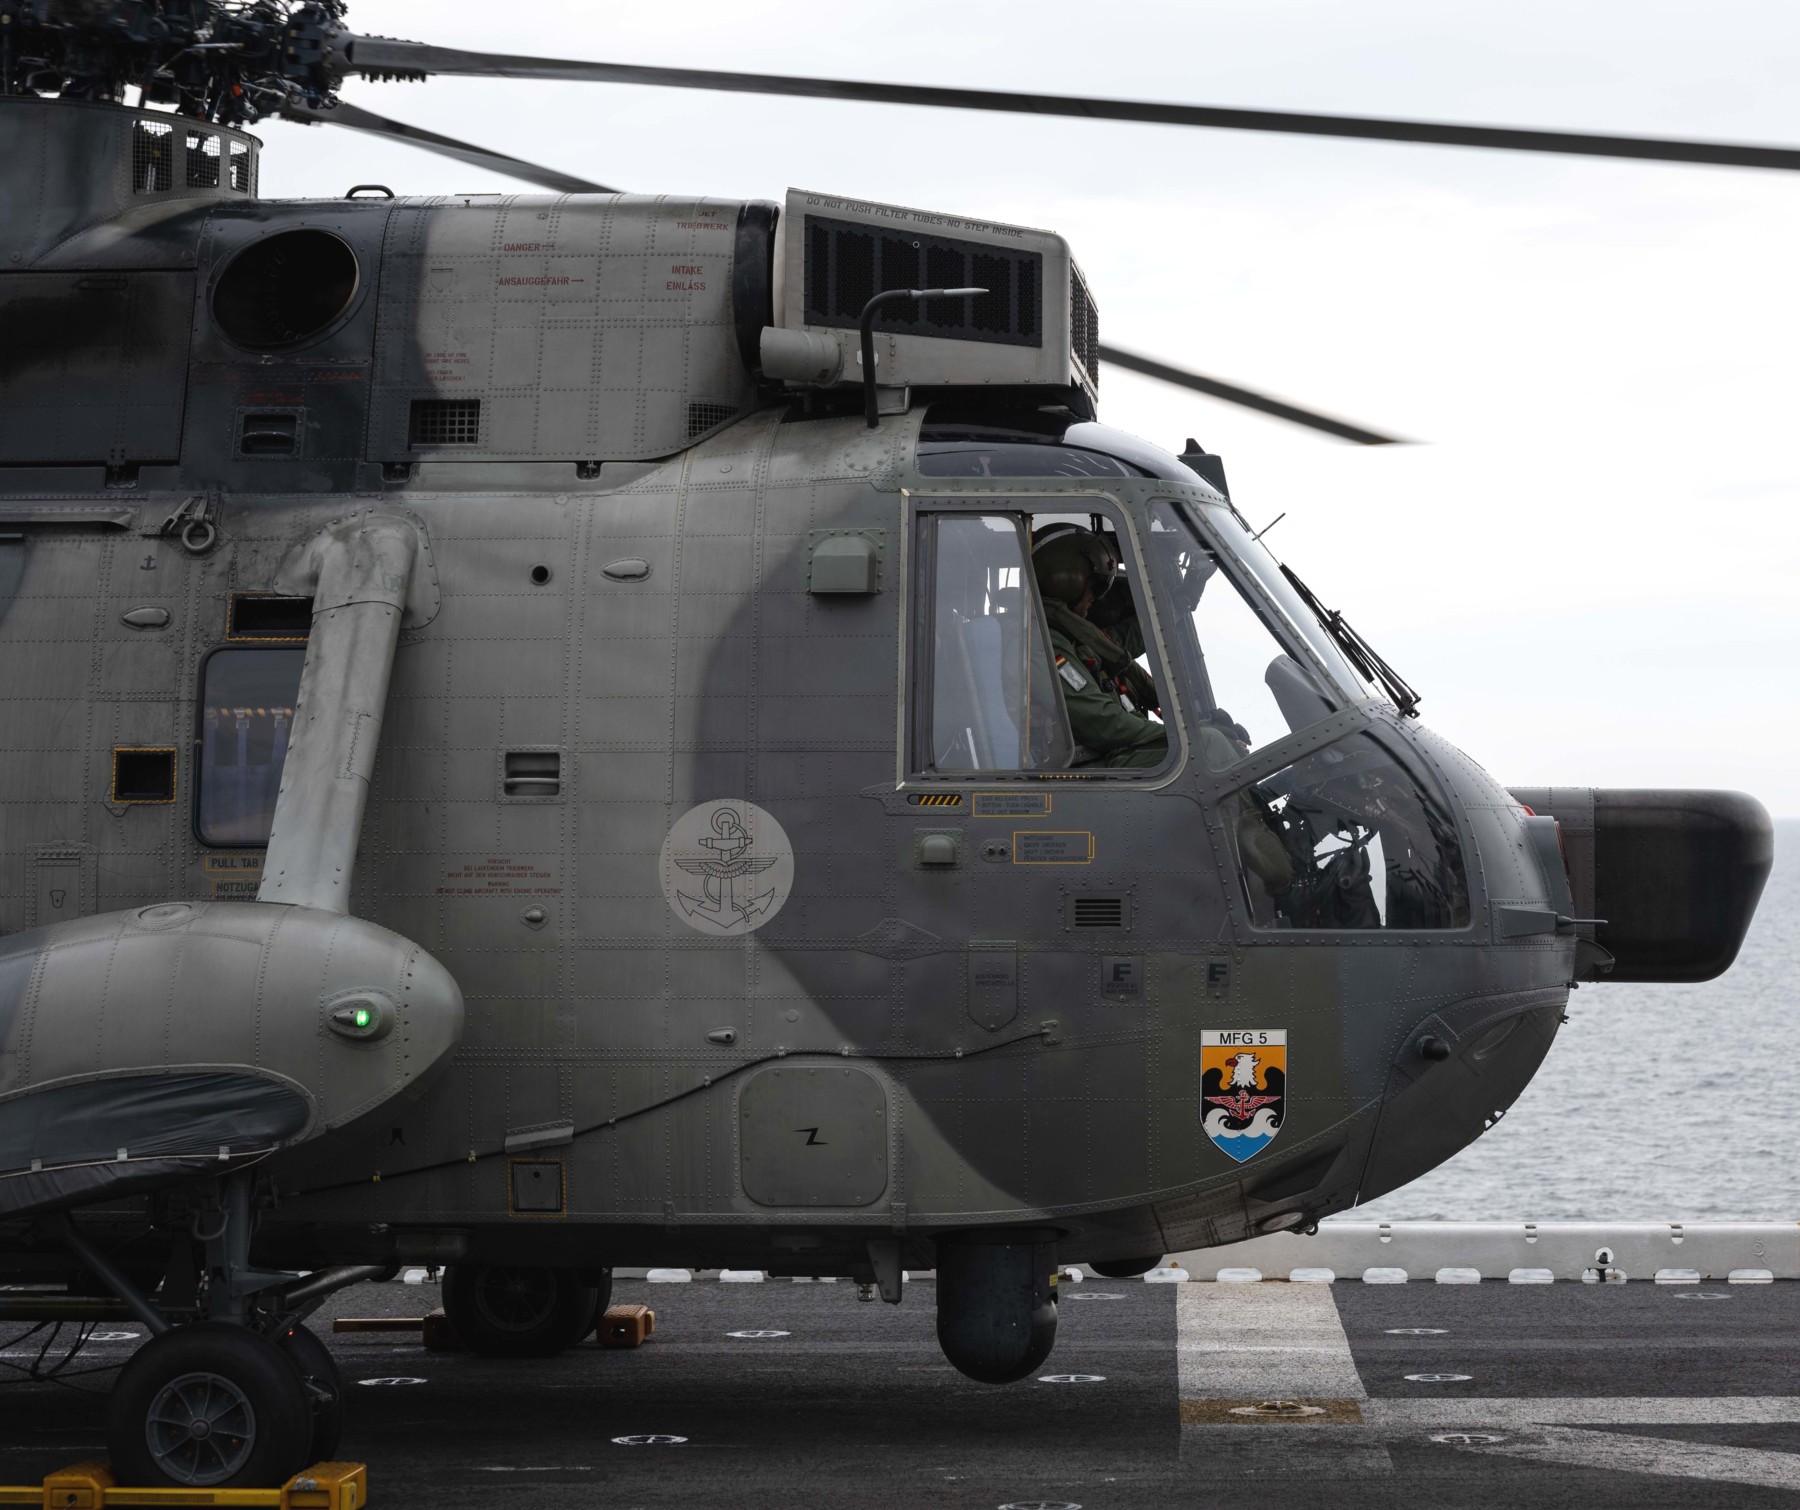 sea king mk.41 westland naval helicopter german navy deutsche marine sar 69